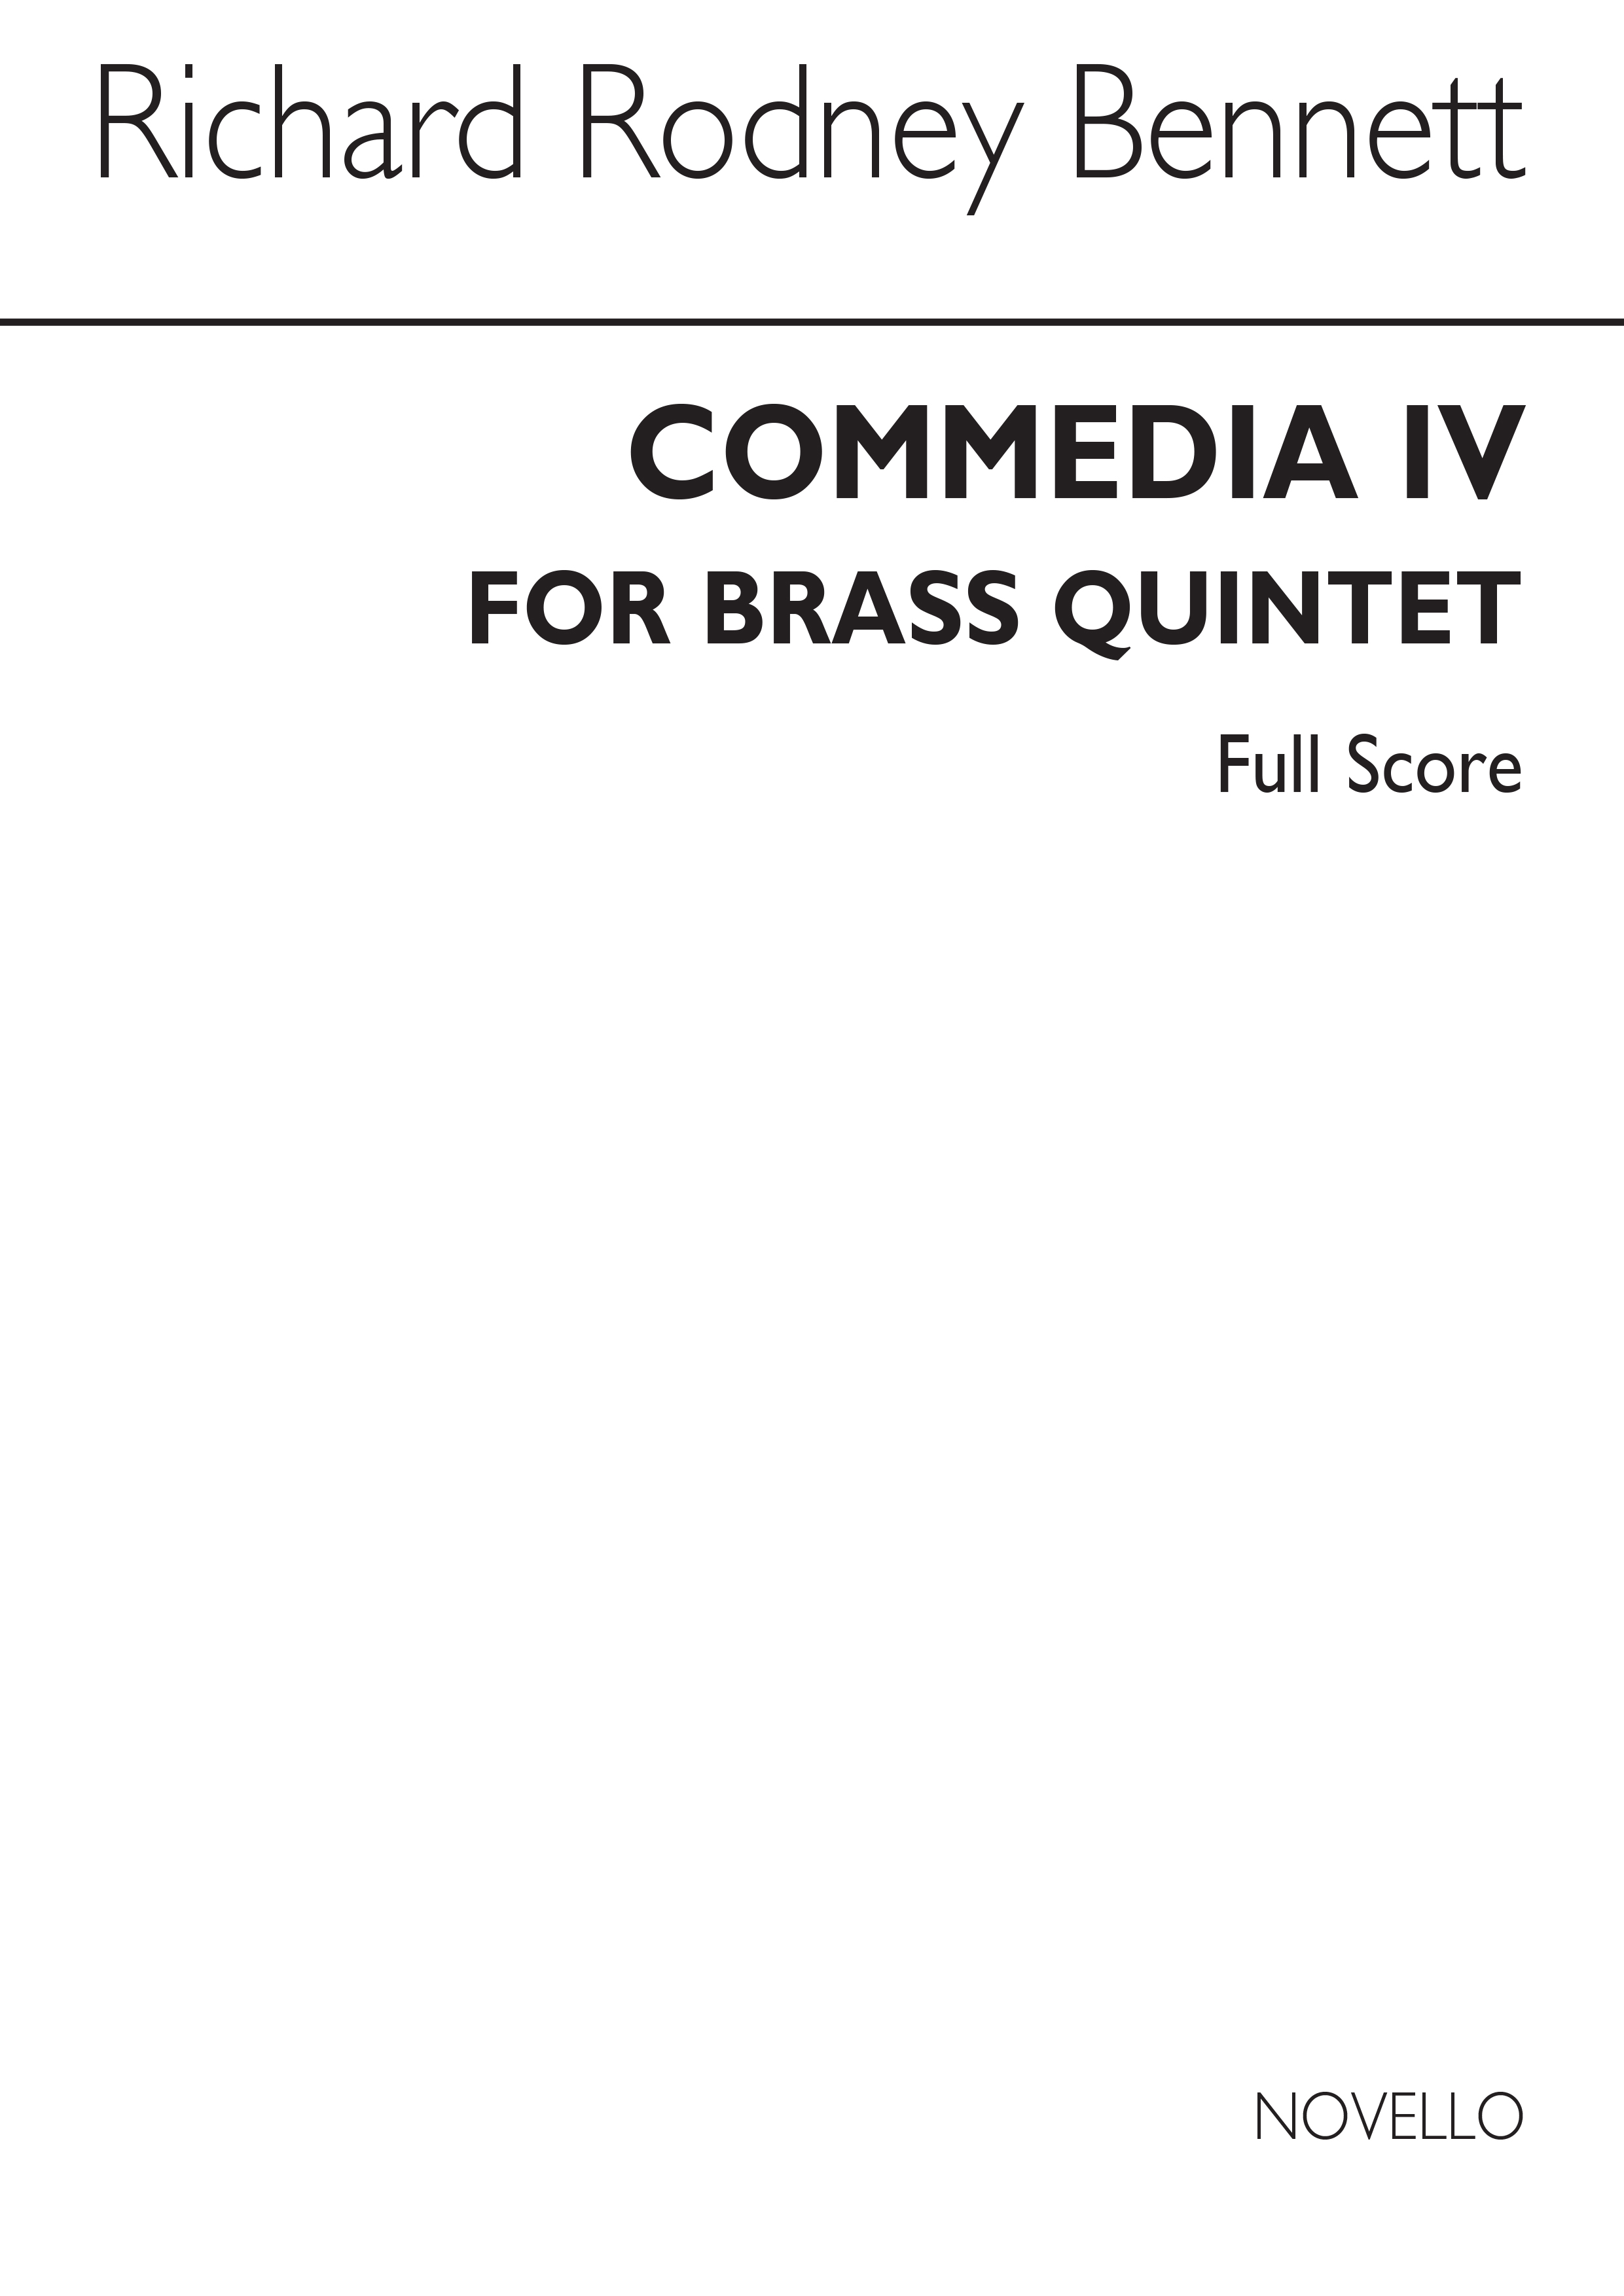 RR Bennett: Commedia IV (Score)